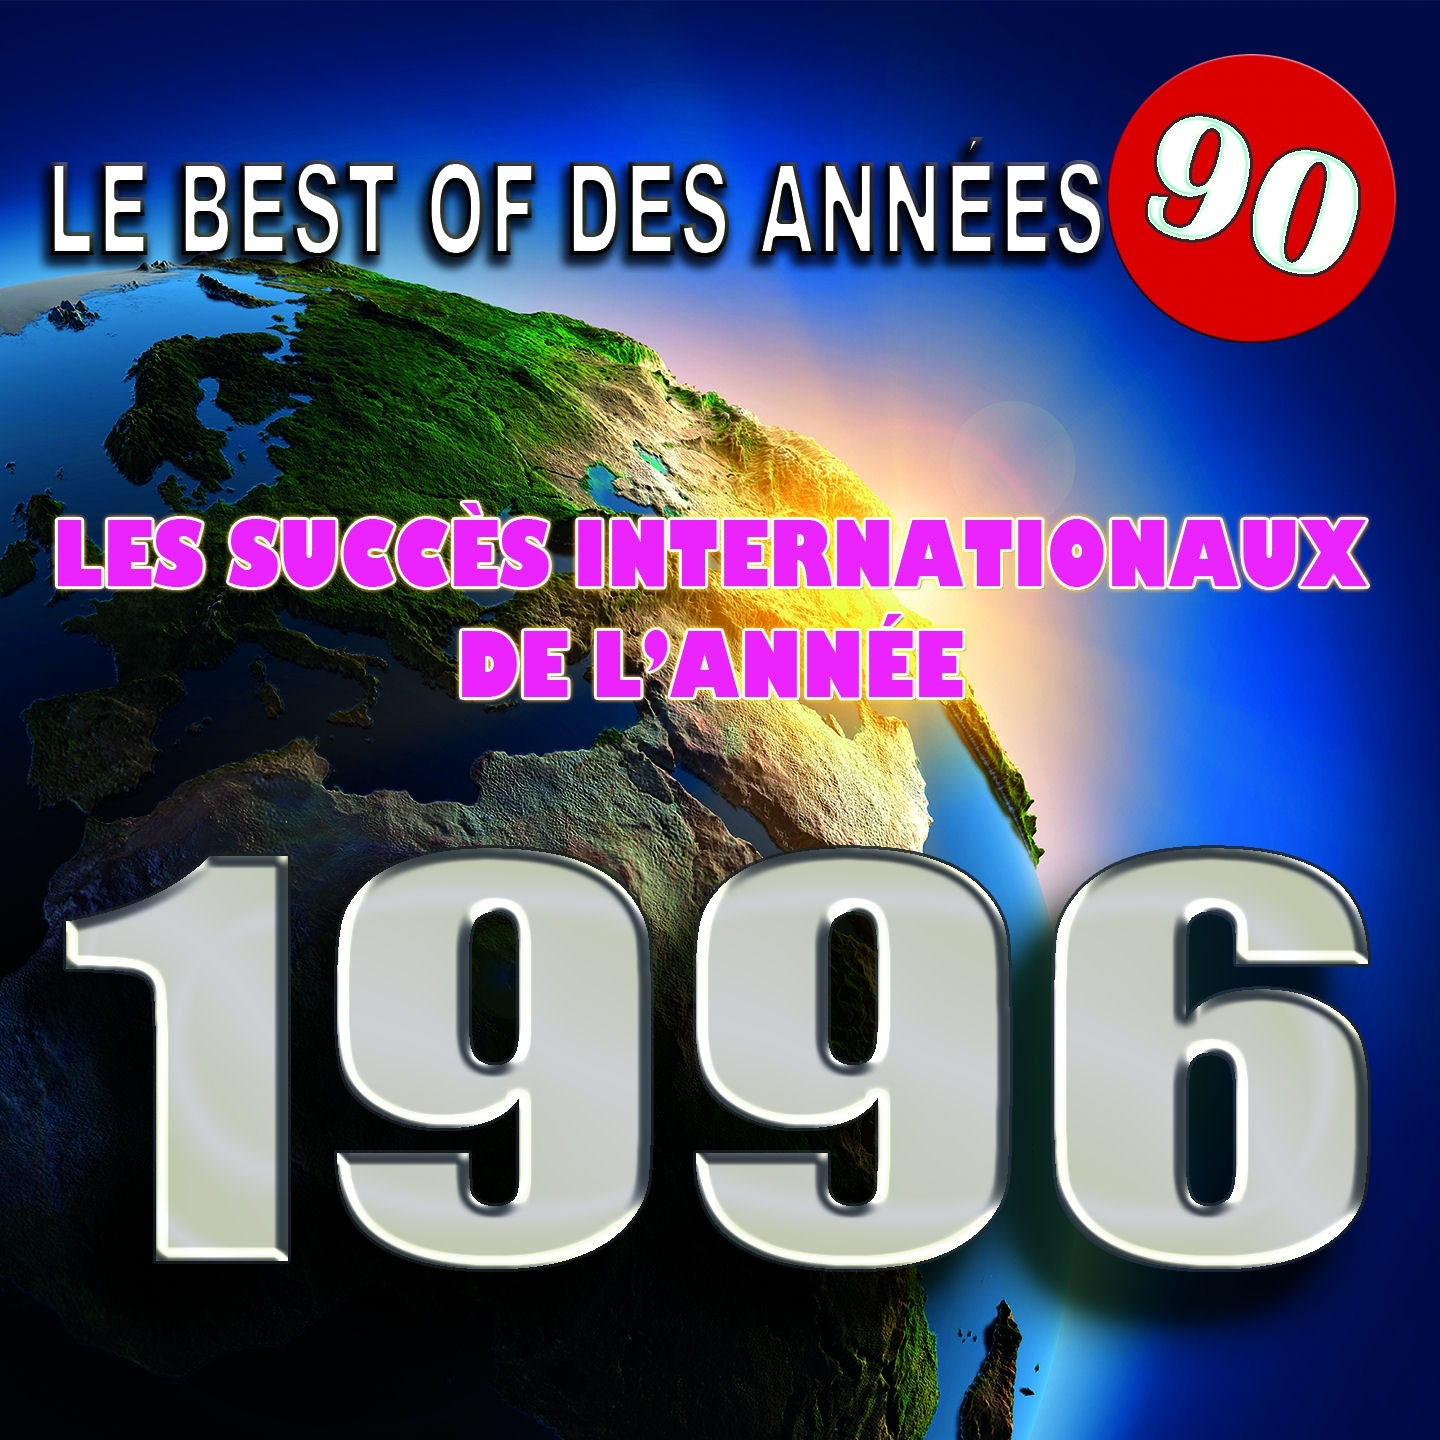 Le Best Of des anne es 90 Les succe s internationaux de l' anne e 1996